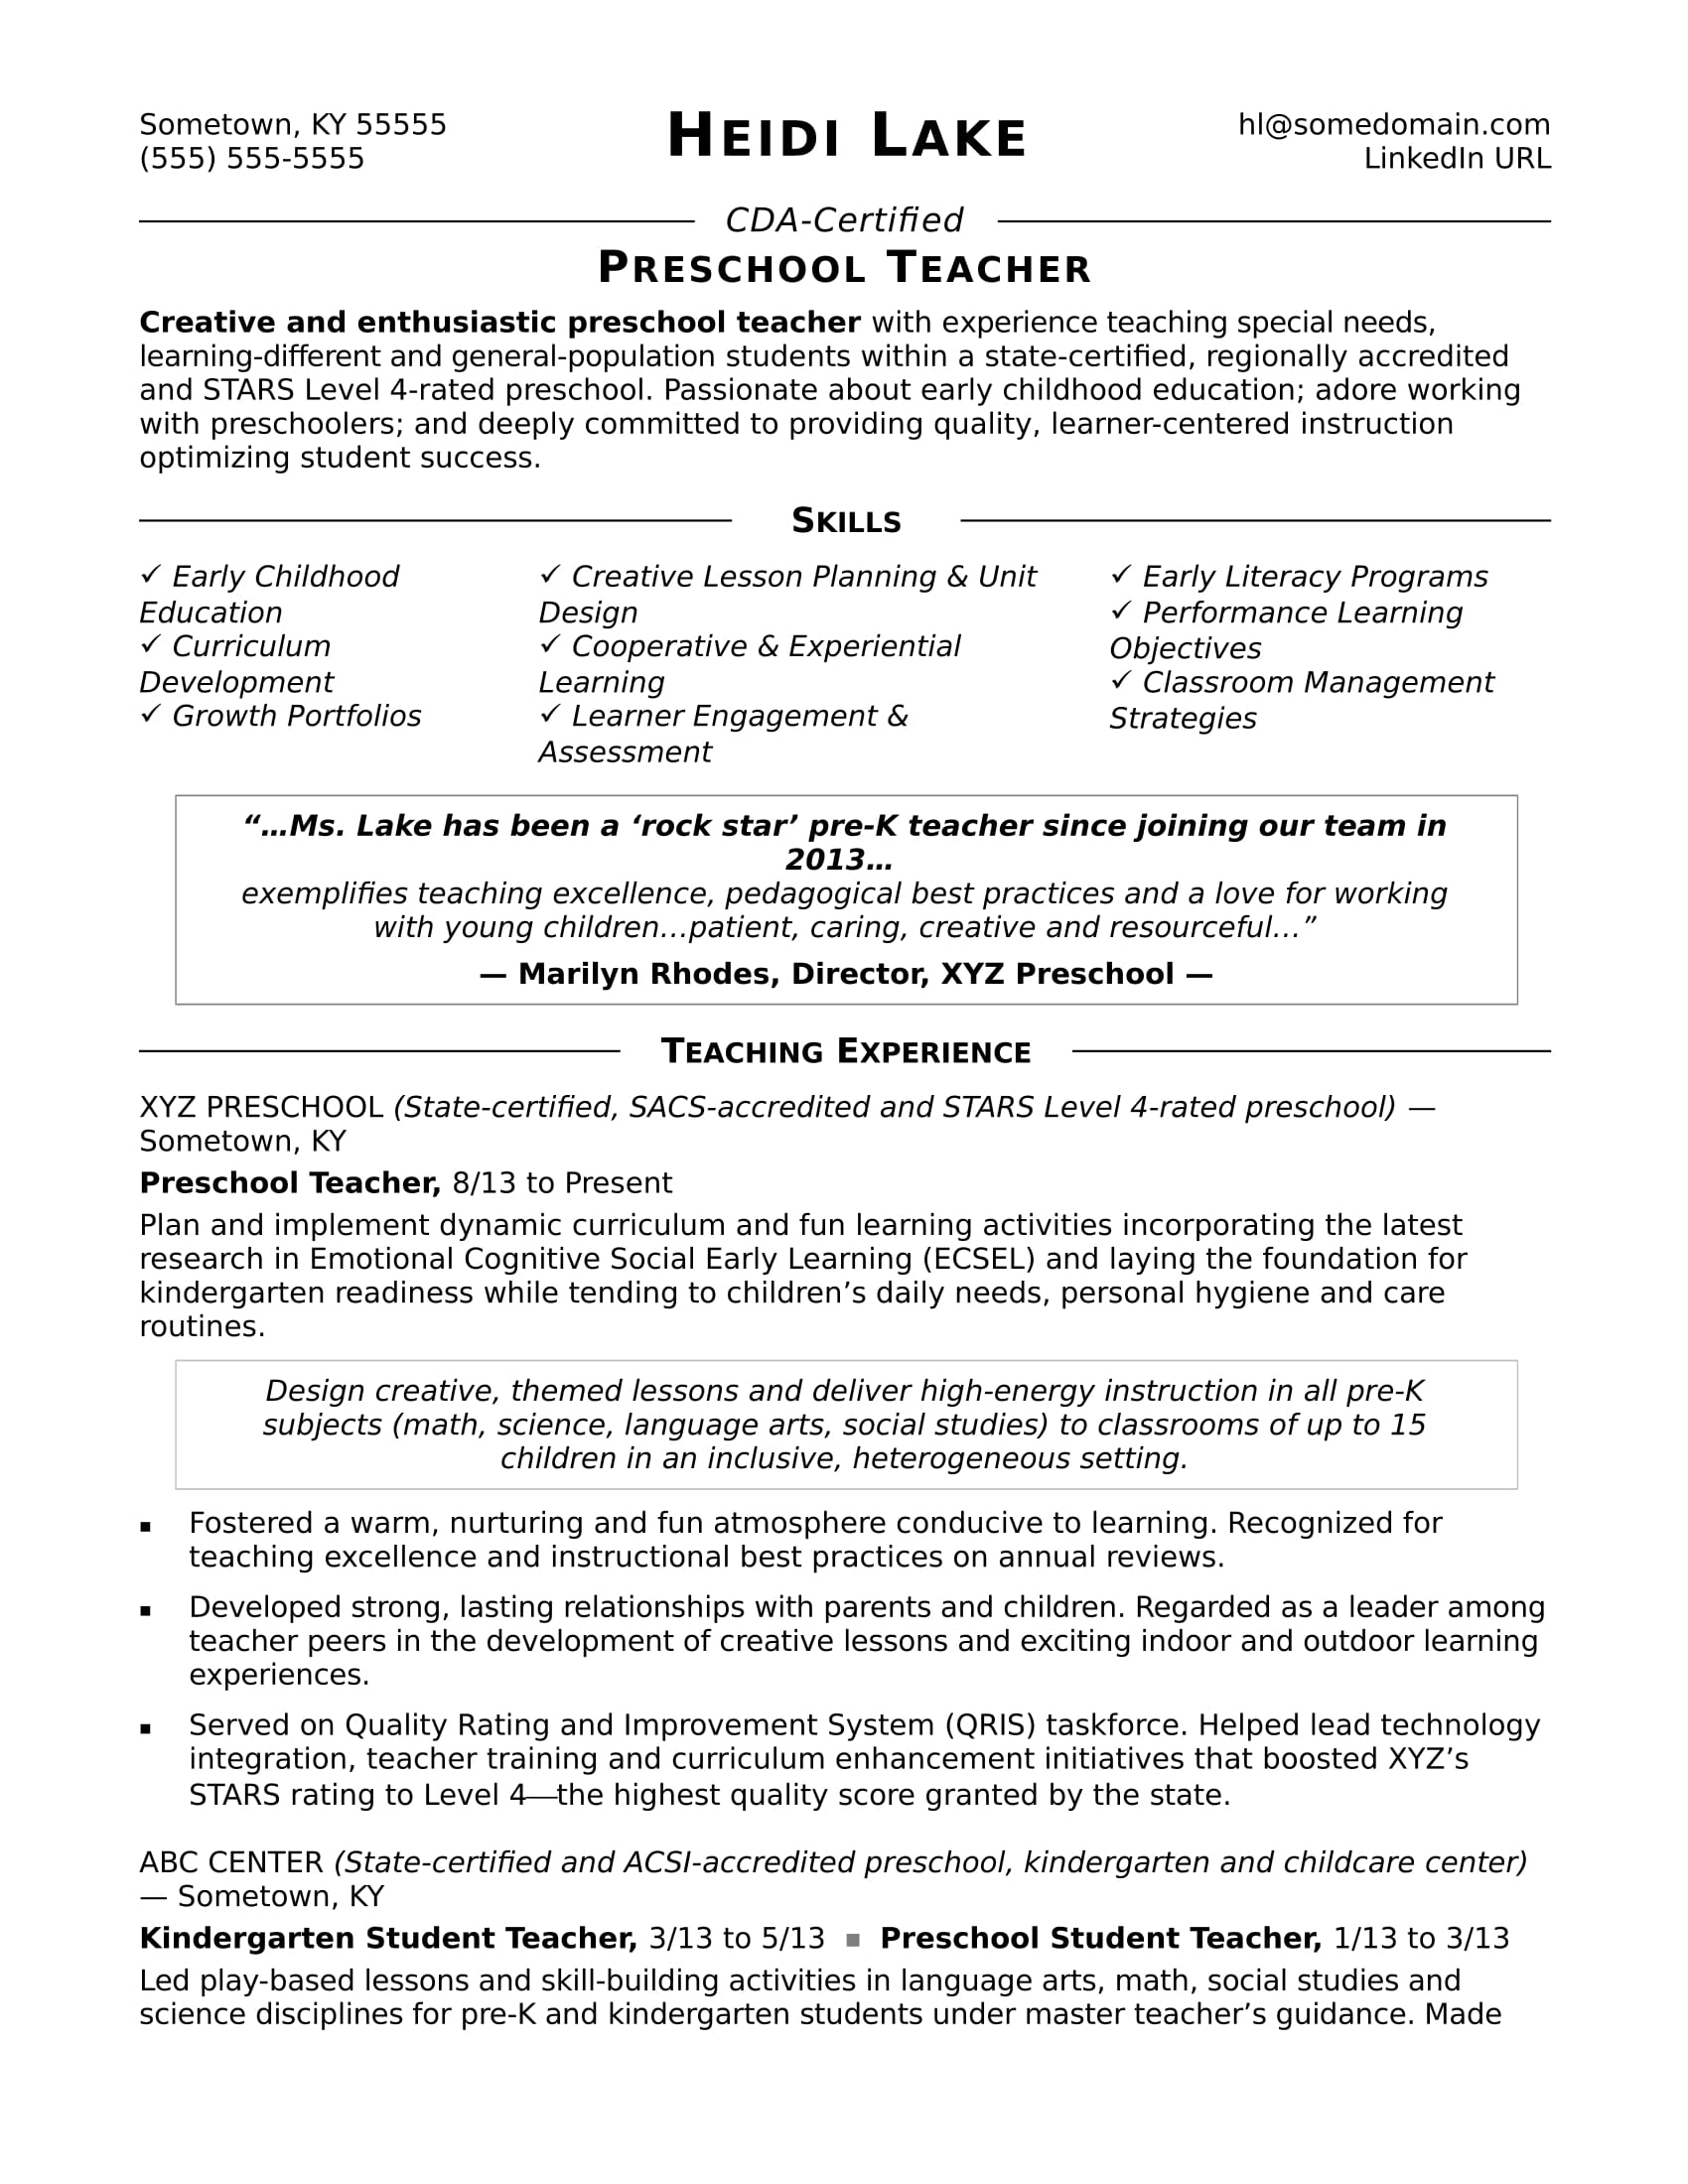 Basic Resume Template Preschool Teacher Resume Sample Monster